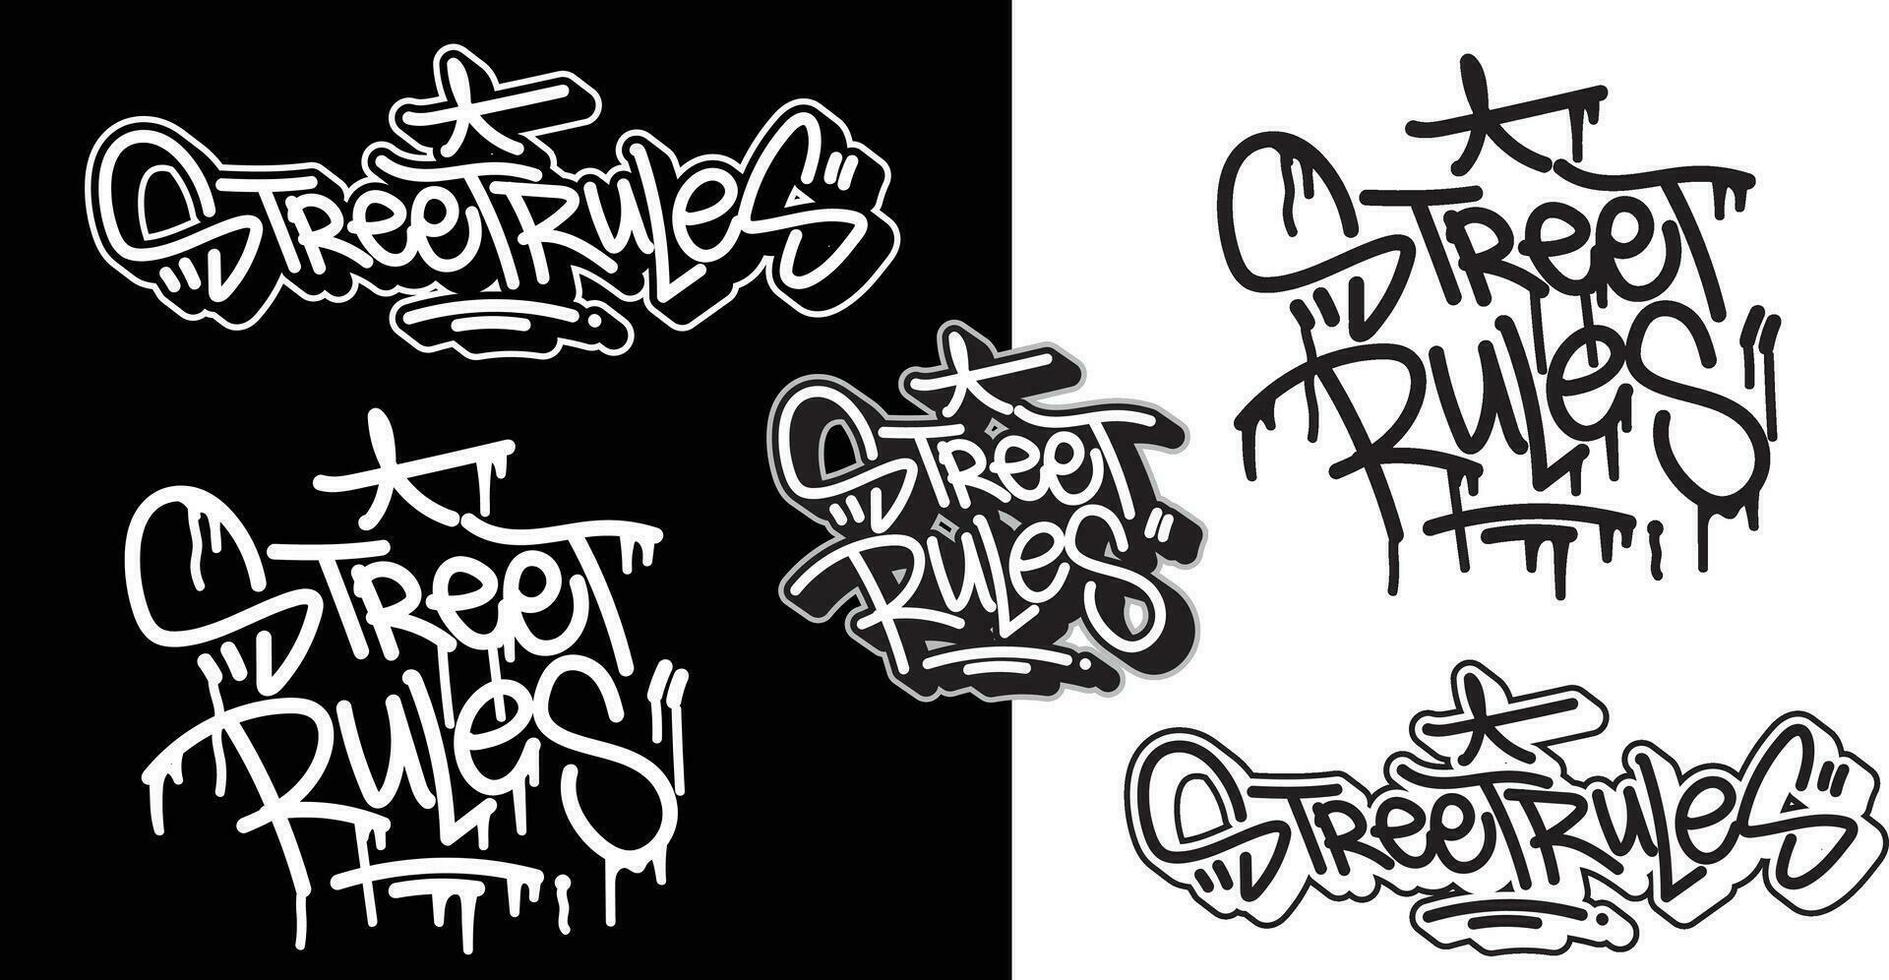 rue règles texte dans graffiti étiquette Police de caractère style. graffiti texte vecteur illustrations.